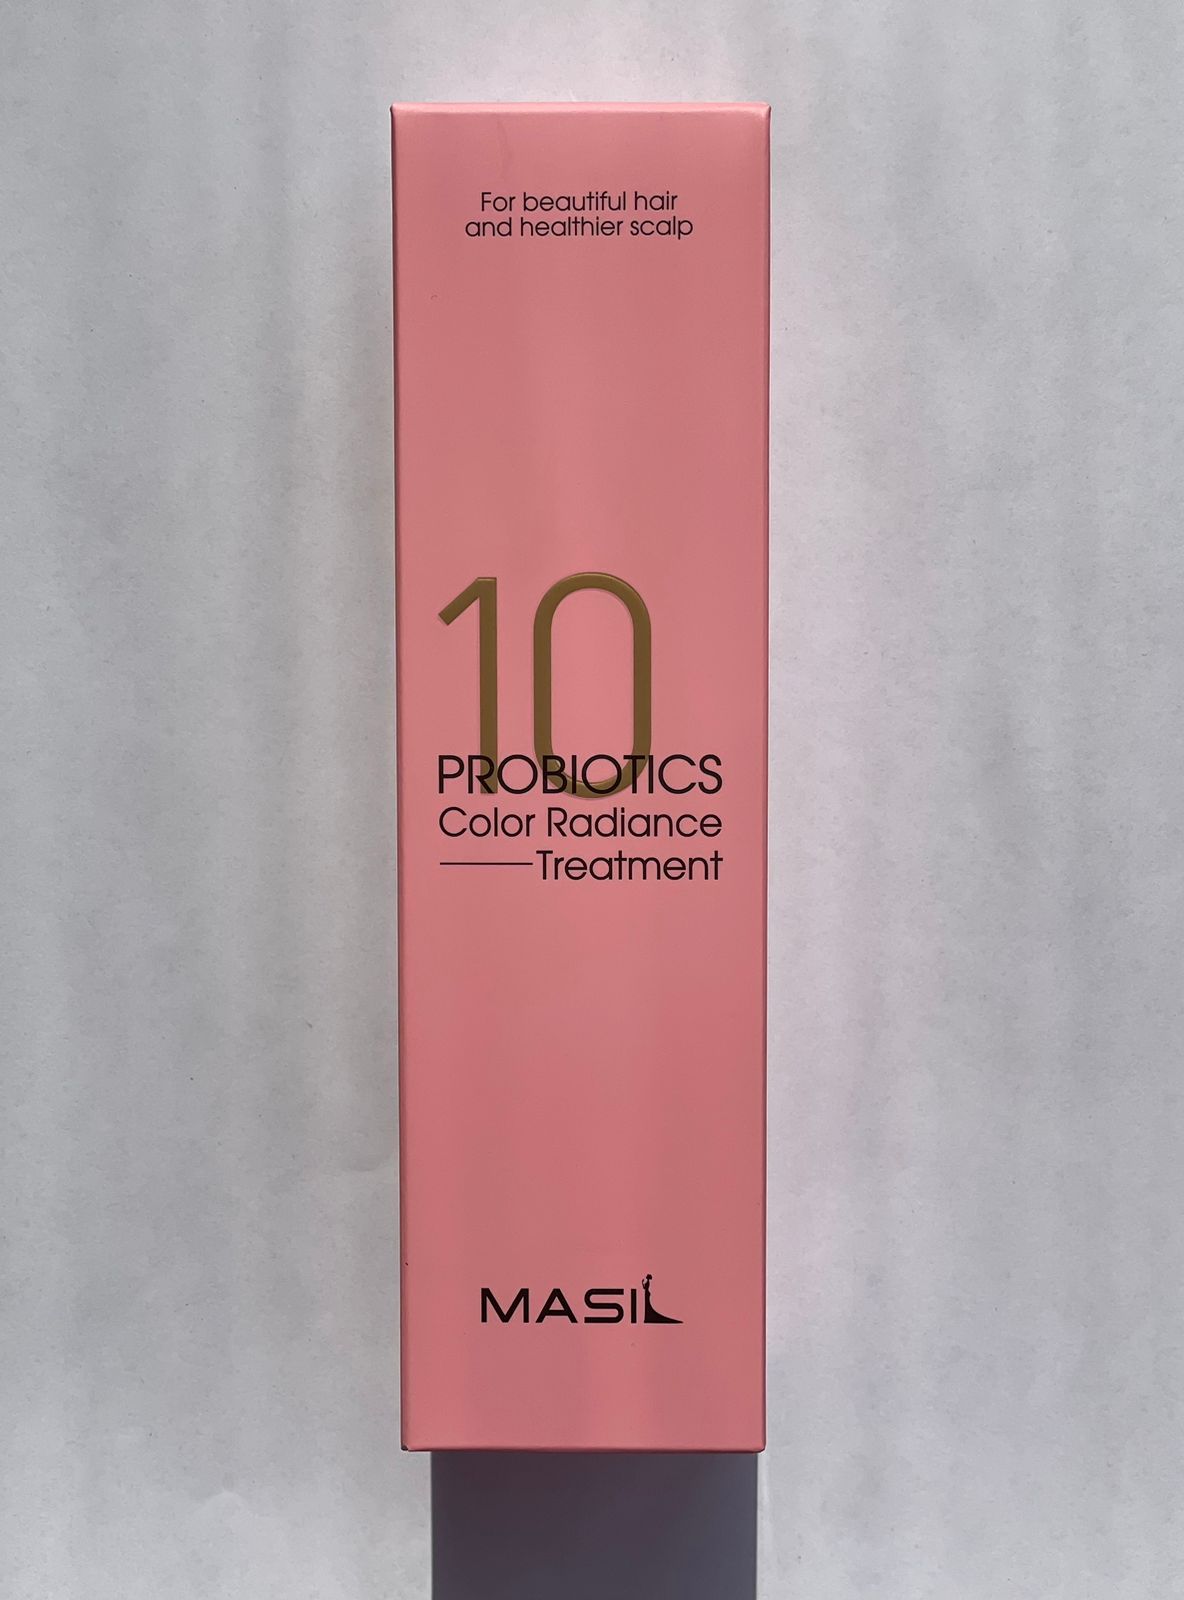 Маска Masil с пробиотиками для защиты цвета Probiotics Color Radiance Treatmant 300 мл masil шампунь для объема волос с пробиотиками 300